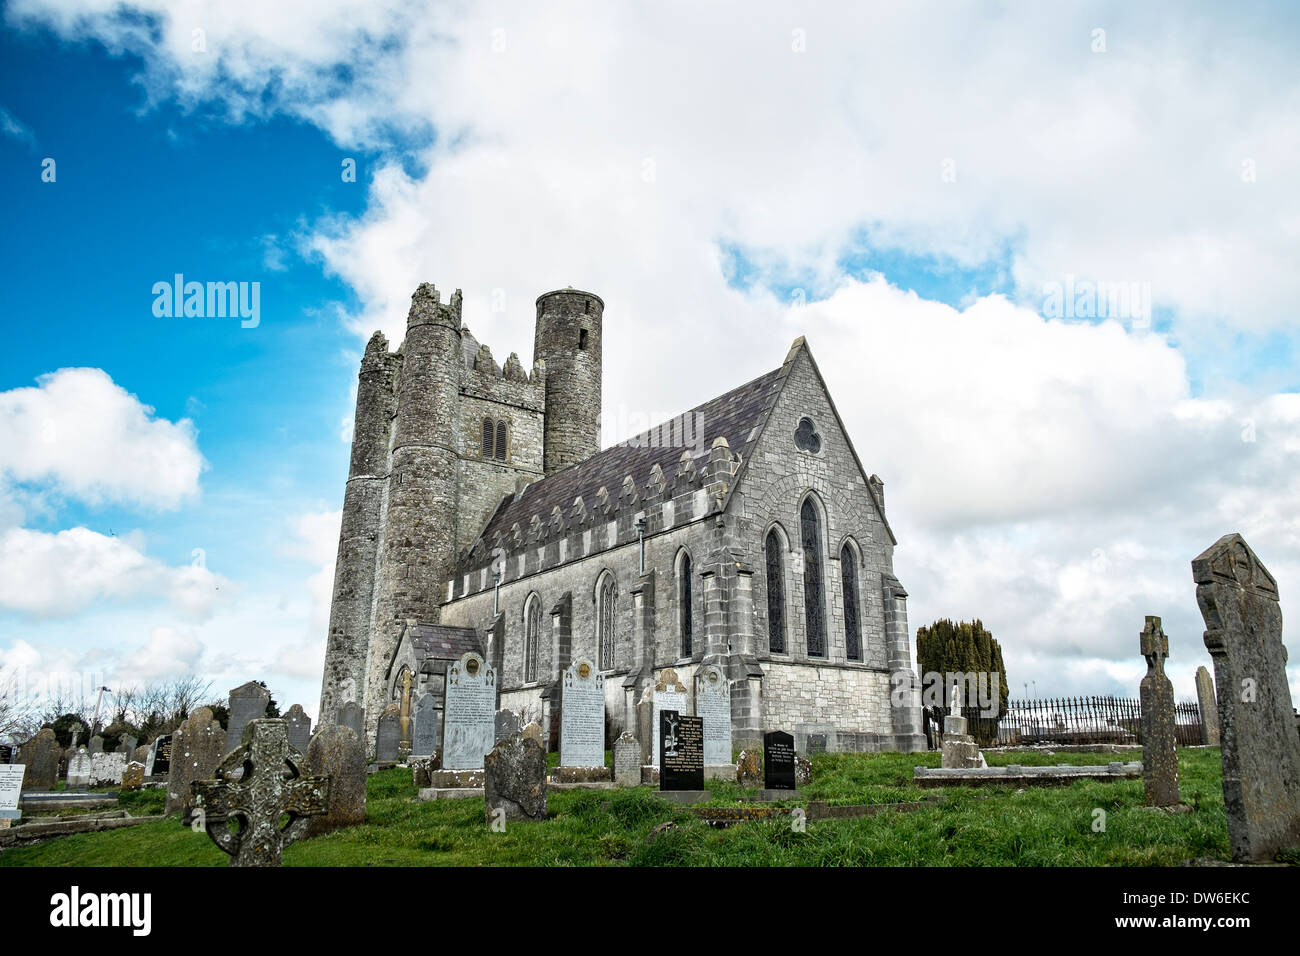 Entweihte Kirche von Irland Kirche mit frühen christlichen Turm und runder Turm angebracht - Lusk, County Dublin, Irland Stockfoto